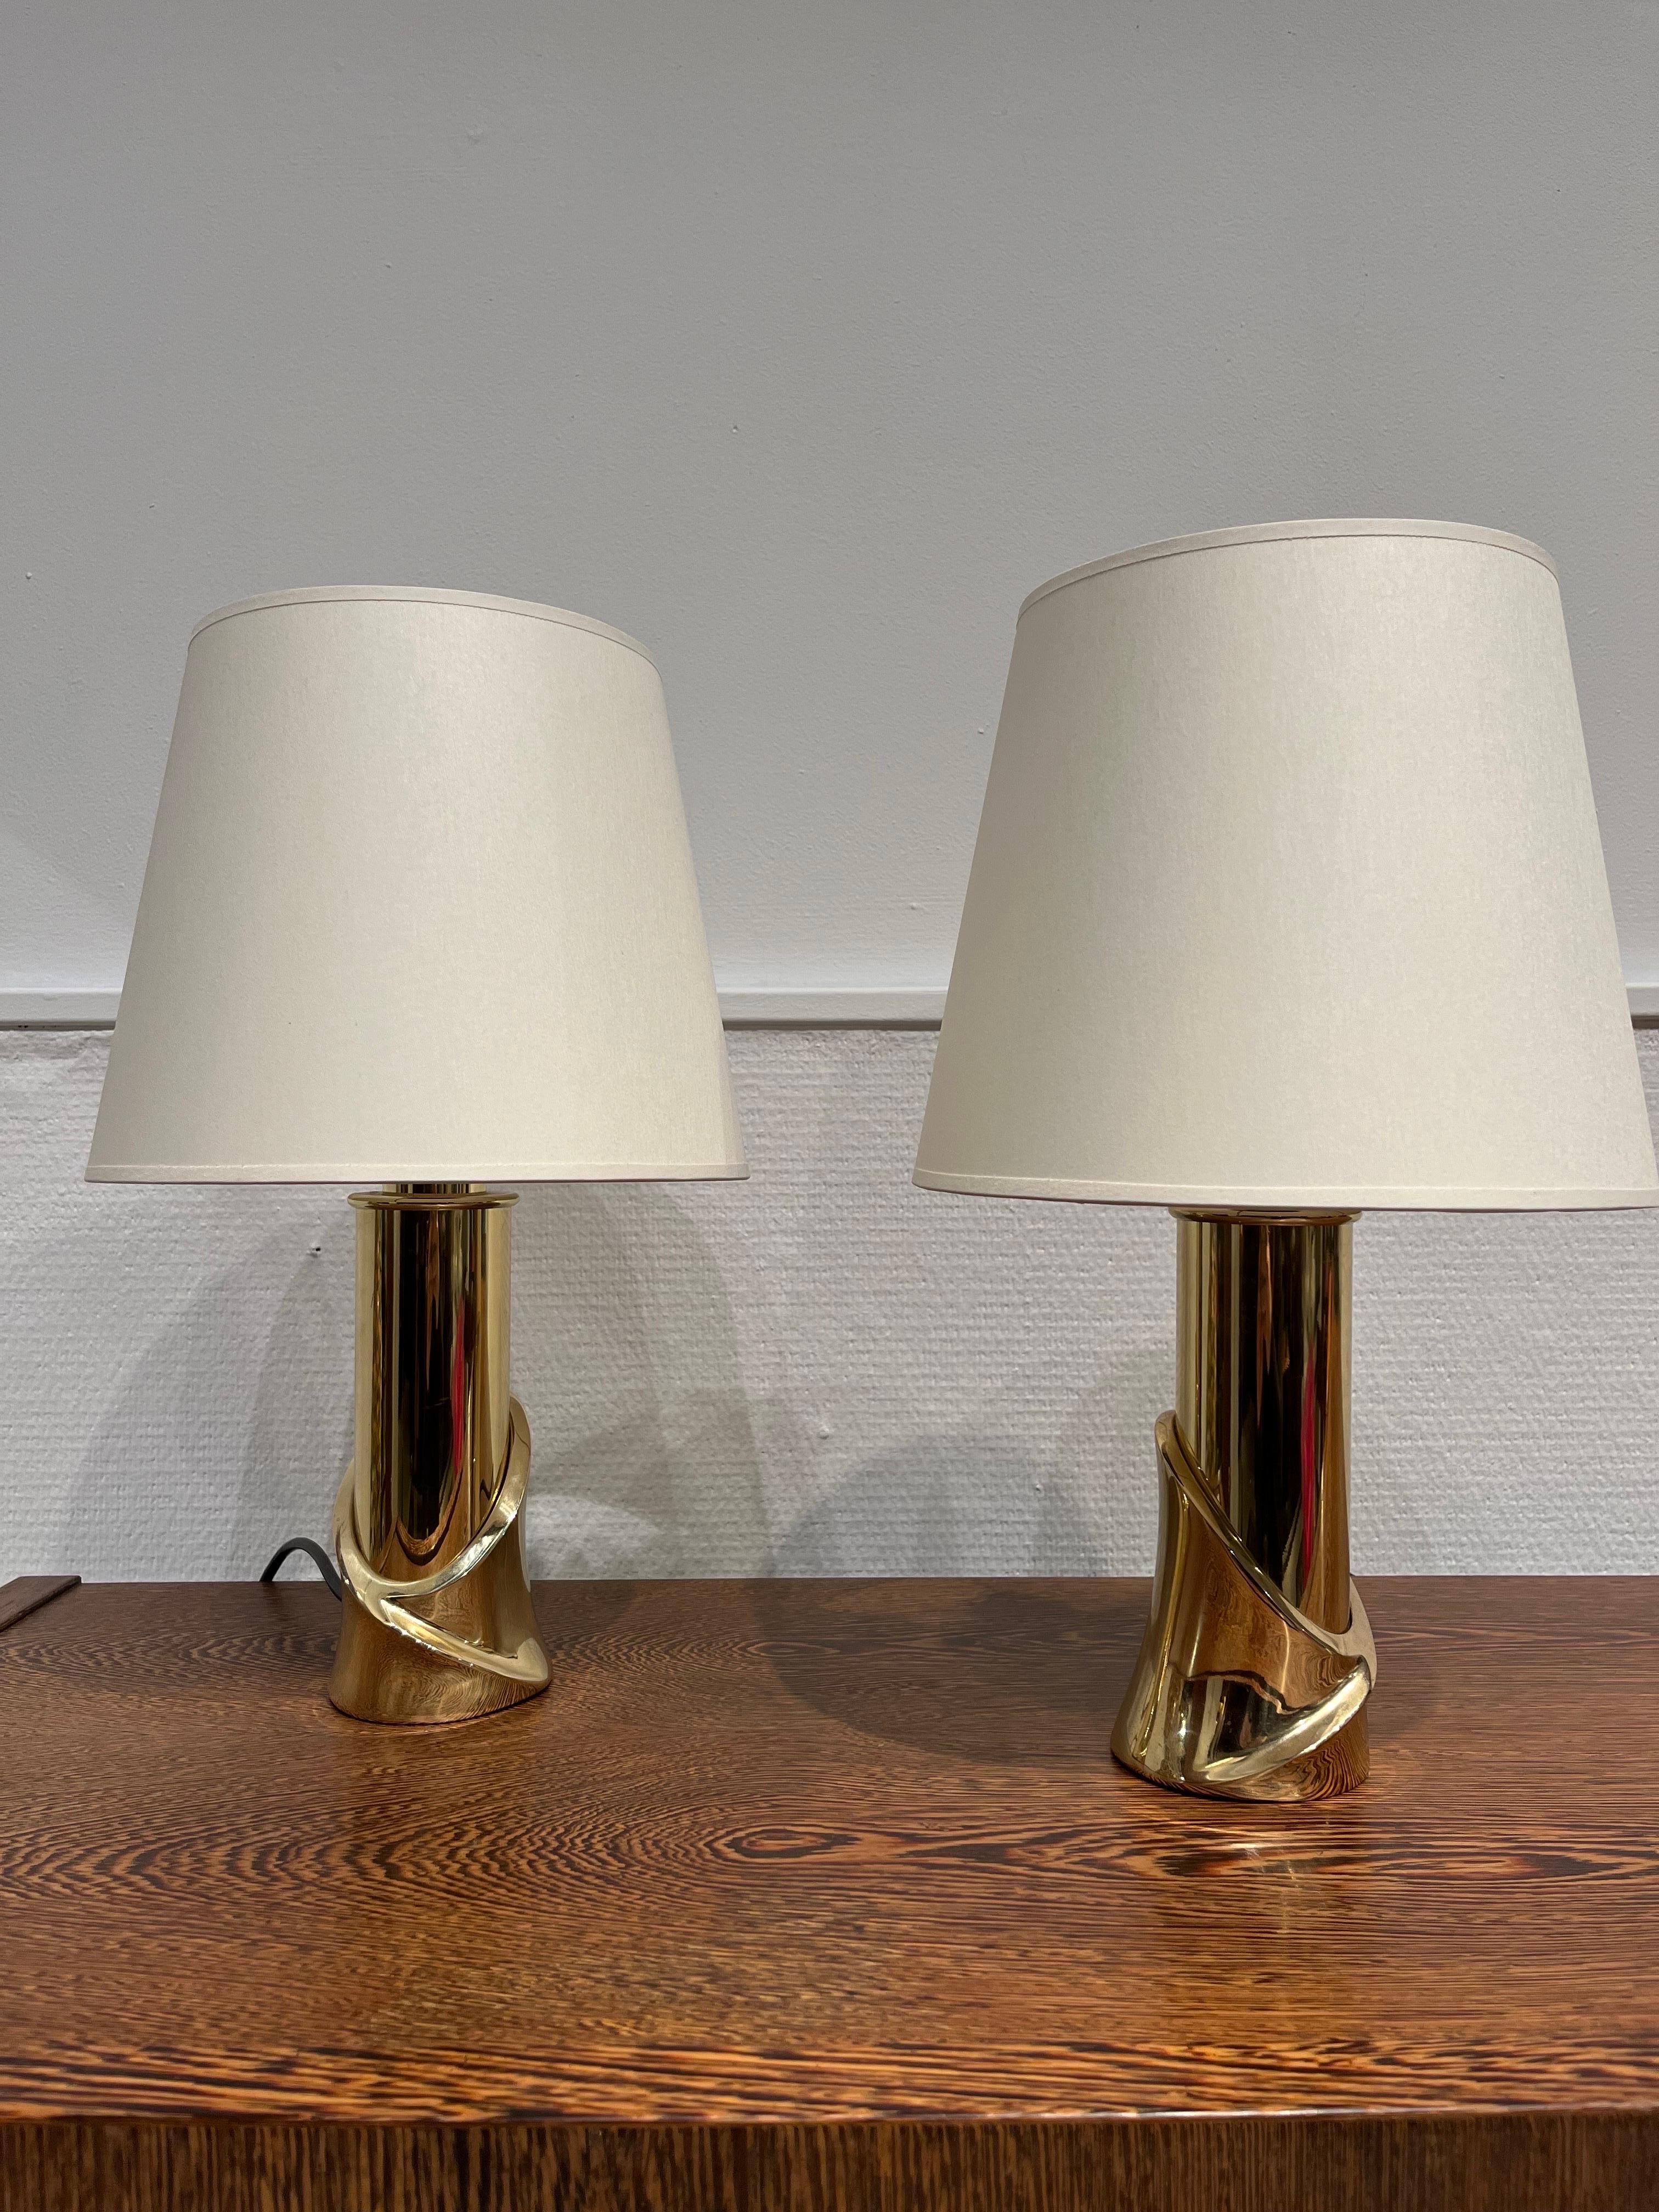 Luciano Frigerio ist ein italienischer Designer, der in den 1960-80er Jahren tätig war. Das elegante Lampenpaar aus Messing stammt aus den 1970er Jahren. Dieses Paar wurde als Nachttischlampen entworfen.